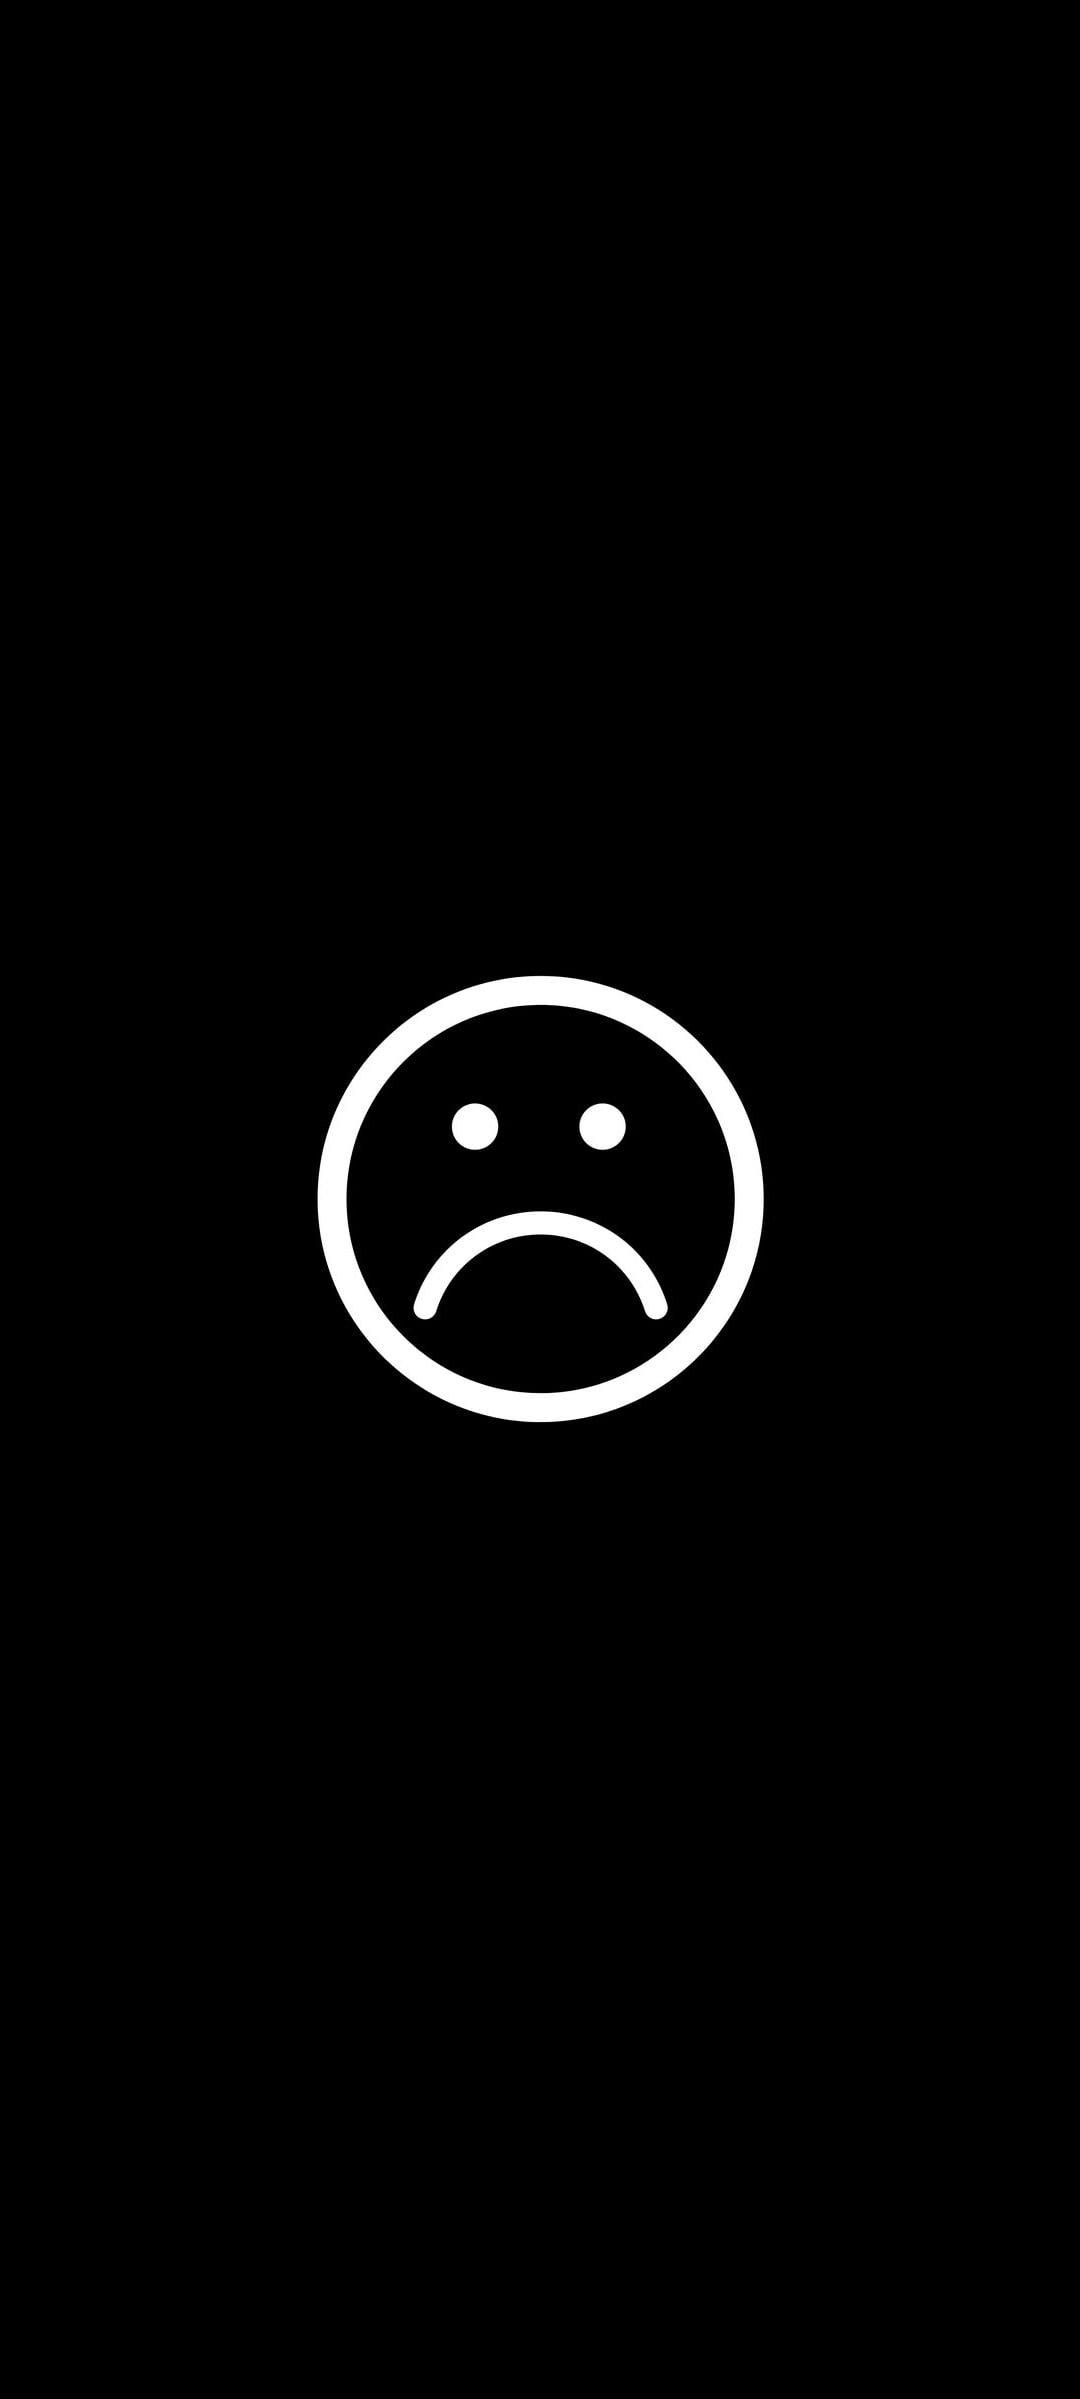 Sad Black Emoji Wallpaper Mobcup